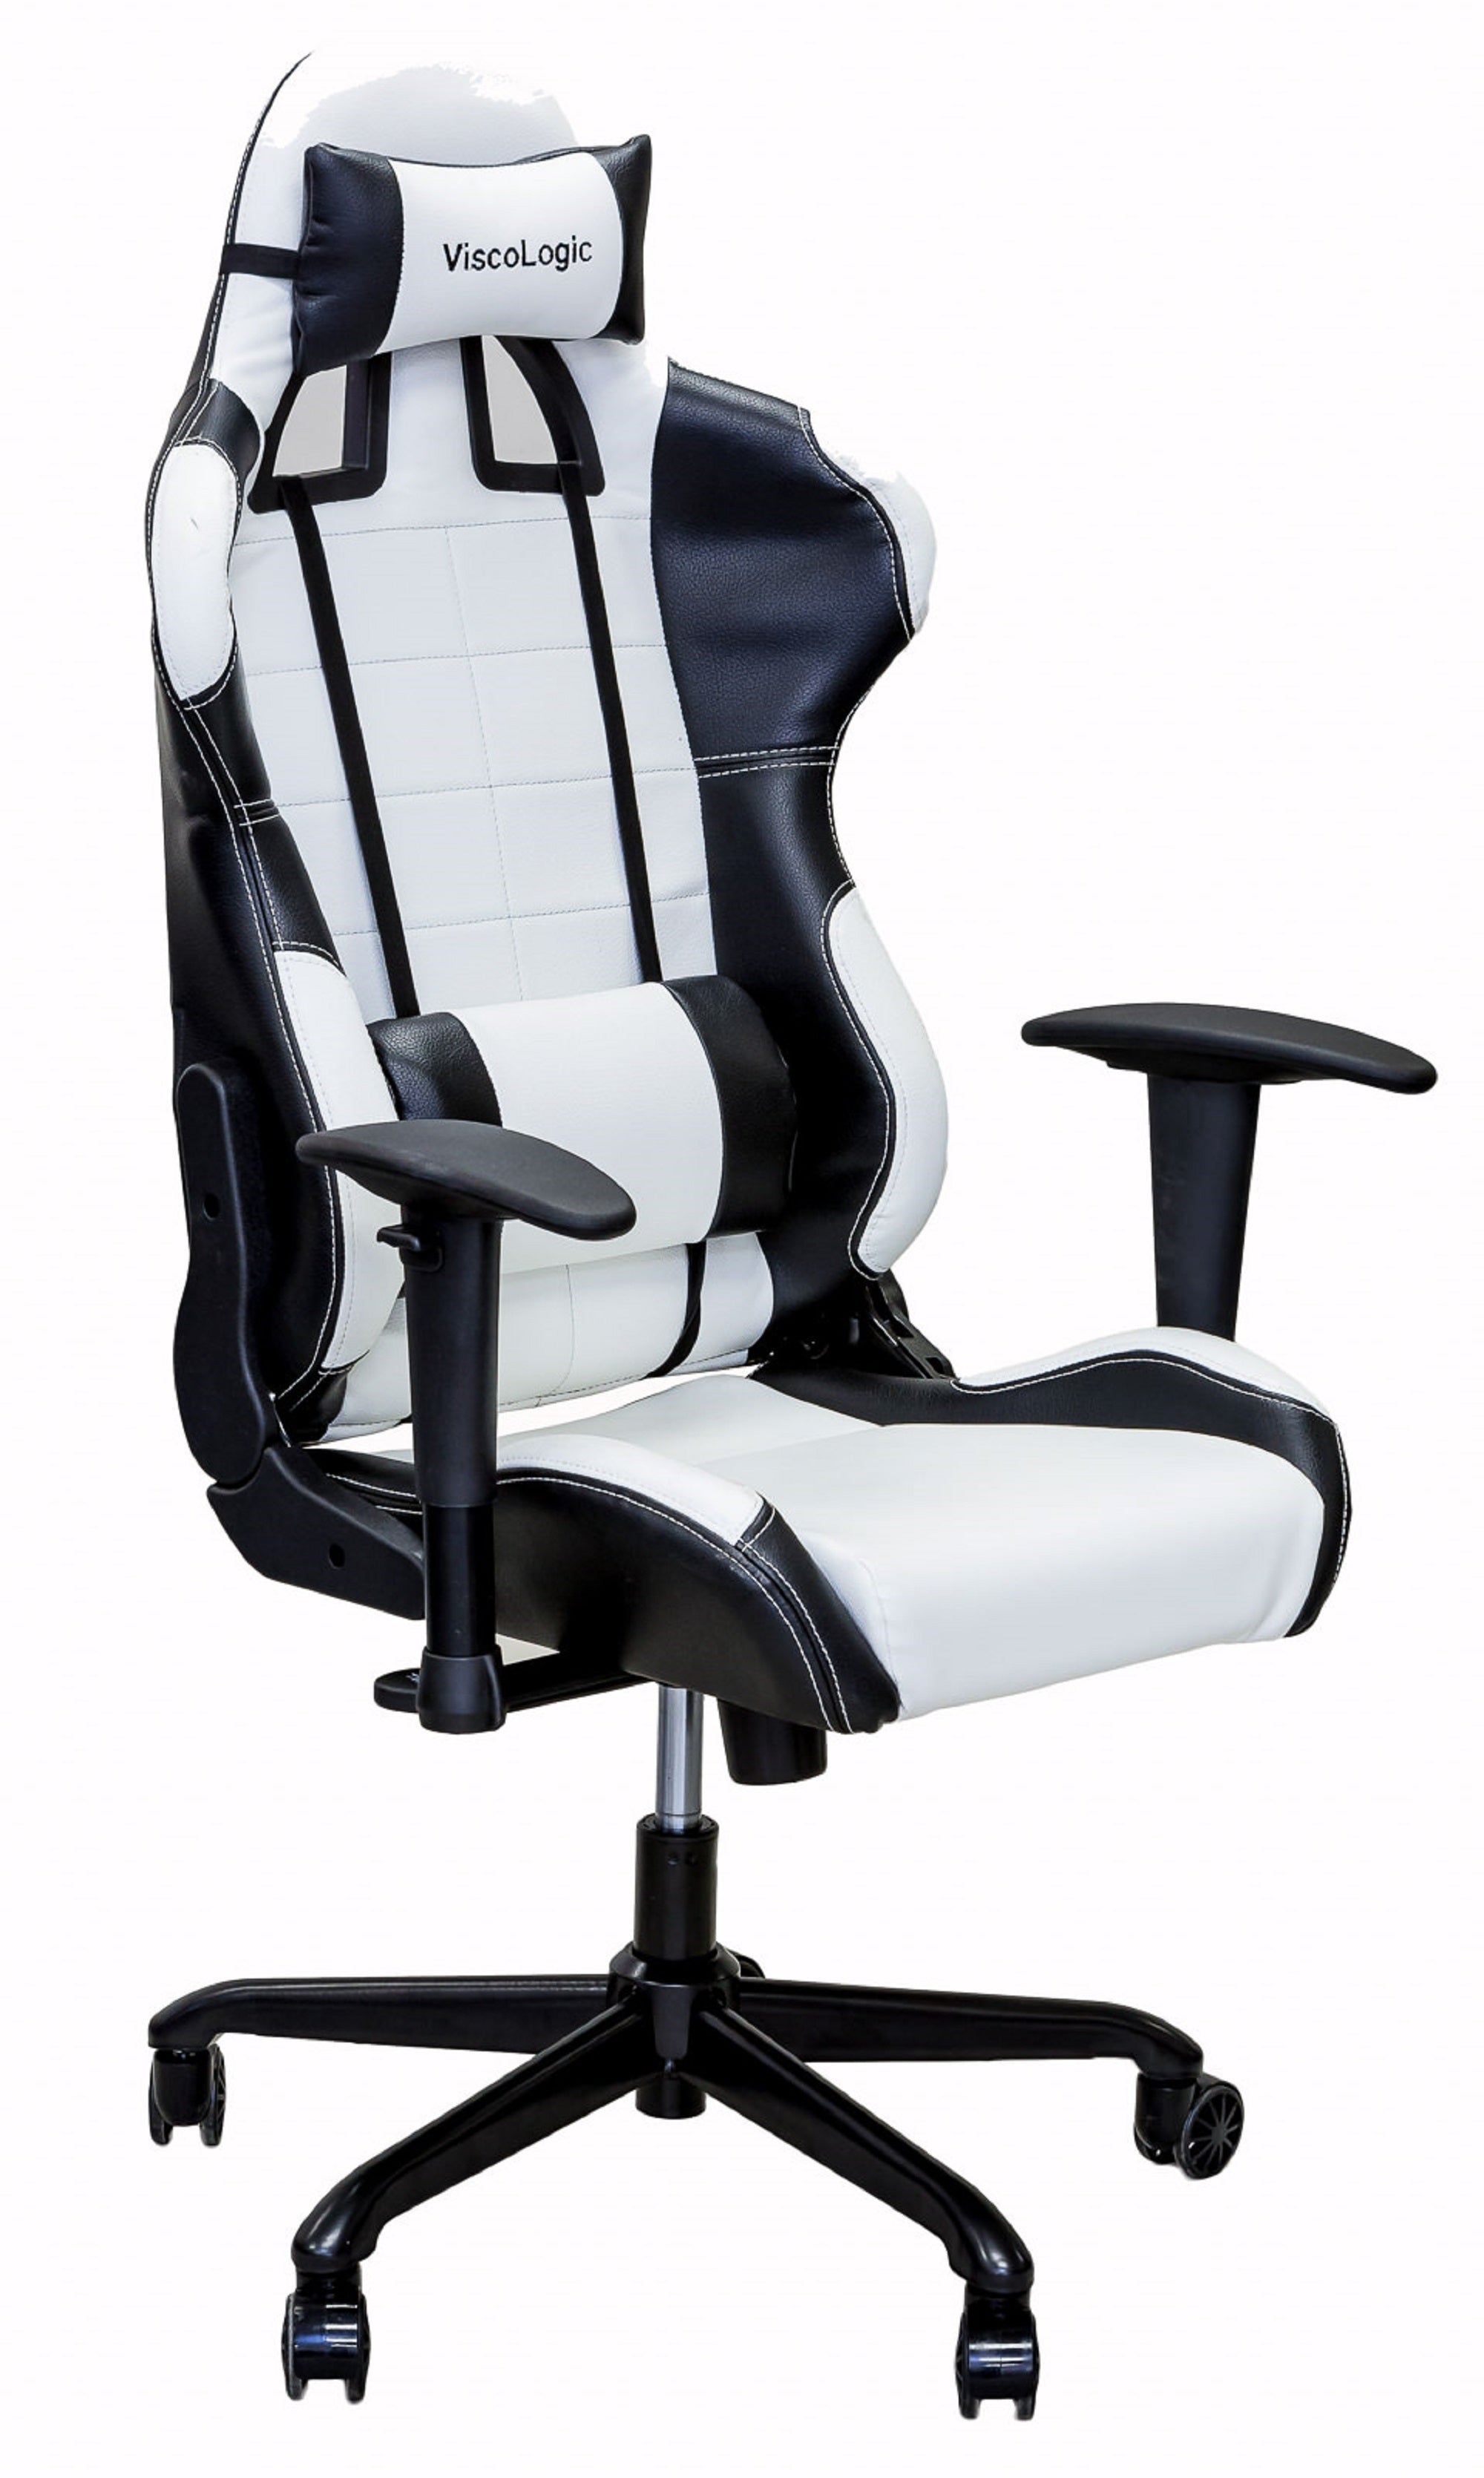 ViscoLogic CAYENNE Chaise de jeu pivotante à cadre en métal ergonomique de style course pour bureau à domicile